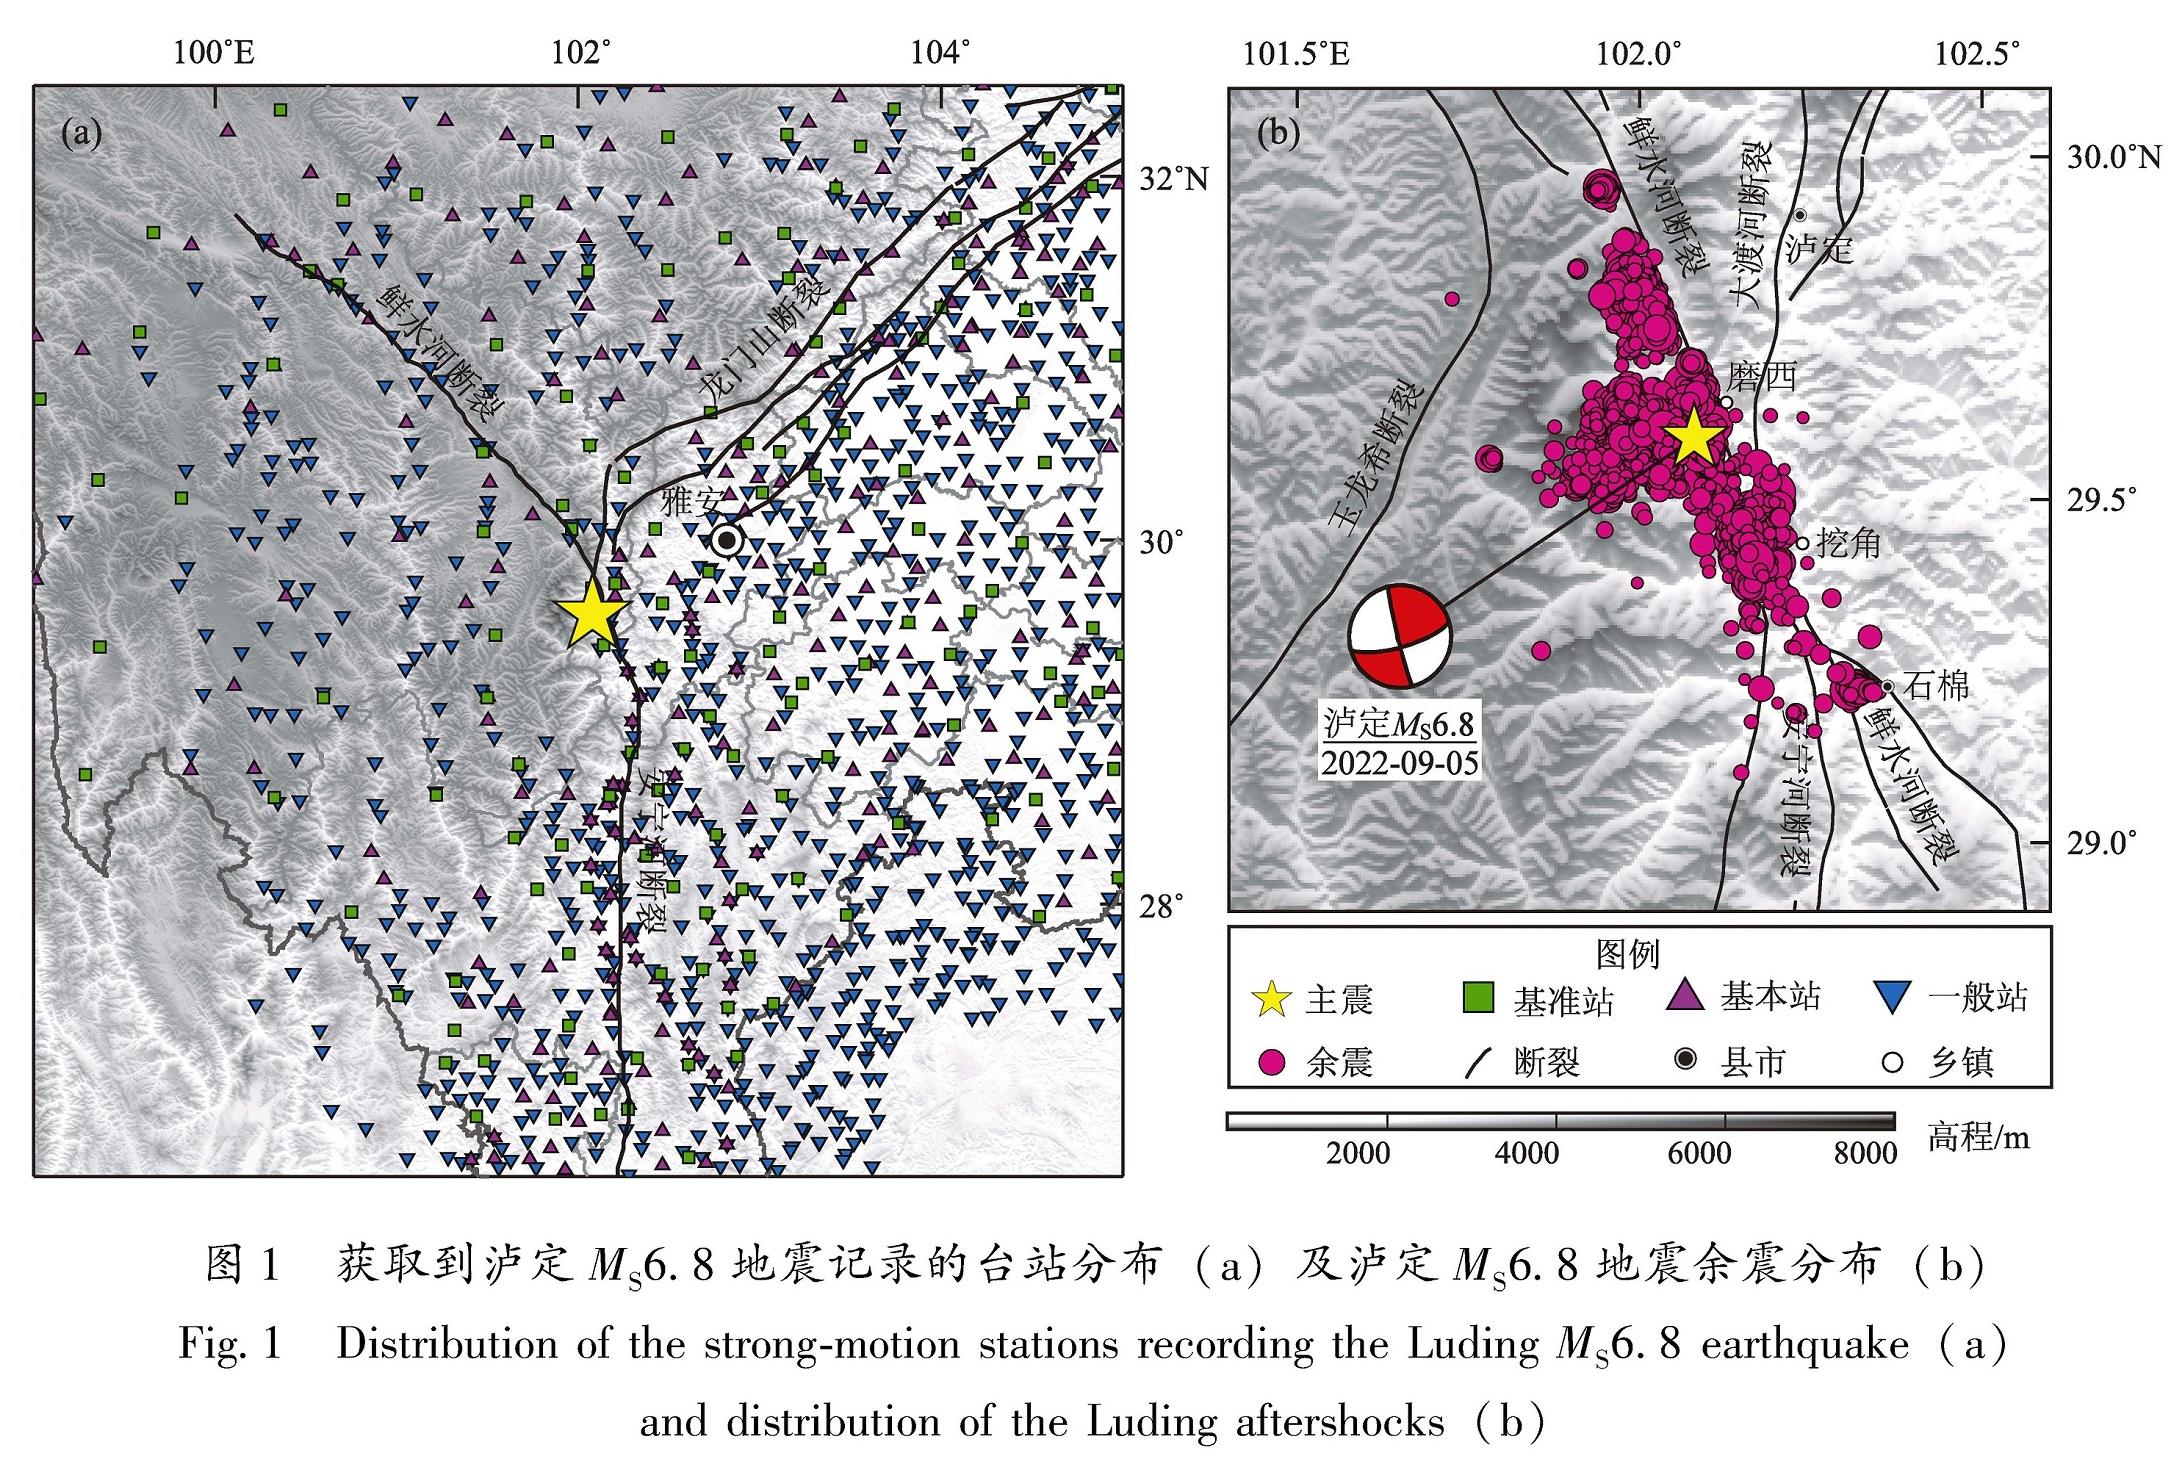 图1 获取到泸定MS6.8地震记录的台站分布(a)及泸定MS6.8地震余震分布(b)<br/>Fig.1 Distribution of the strong-motion stations recording the Luding MS6.8 earthquake(a) and distribution of the Luding aftershocks(b)